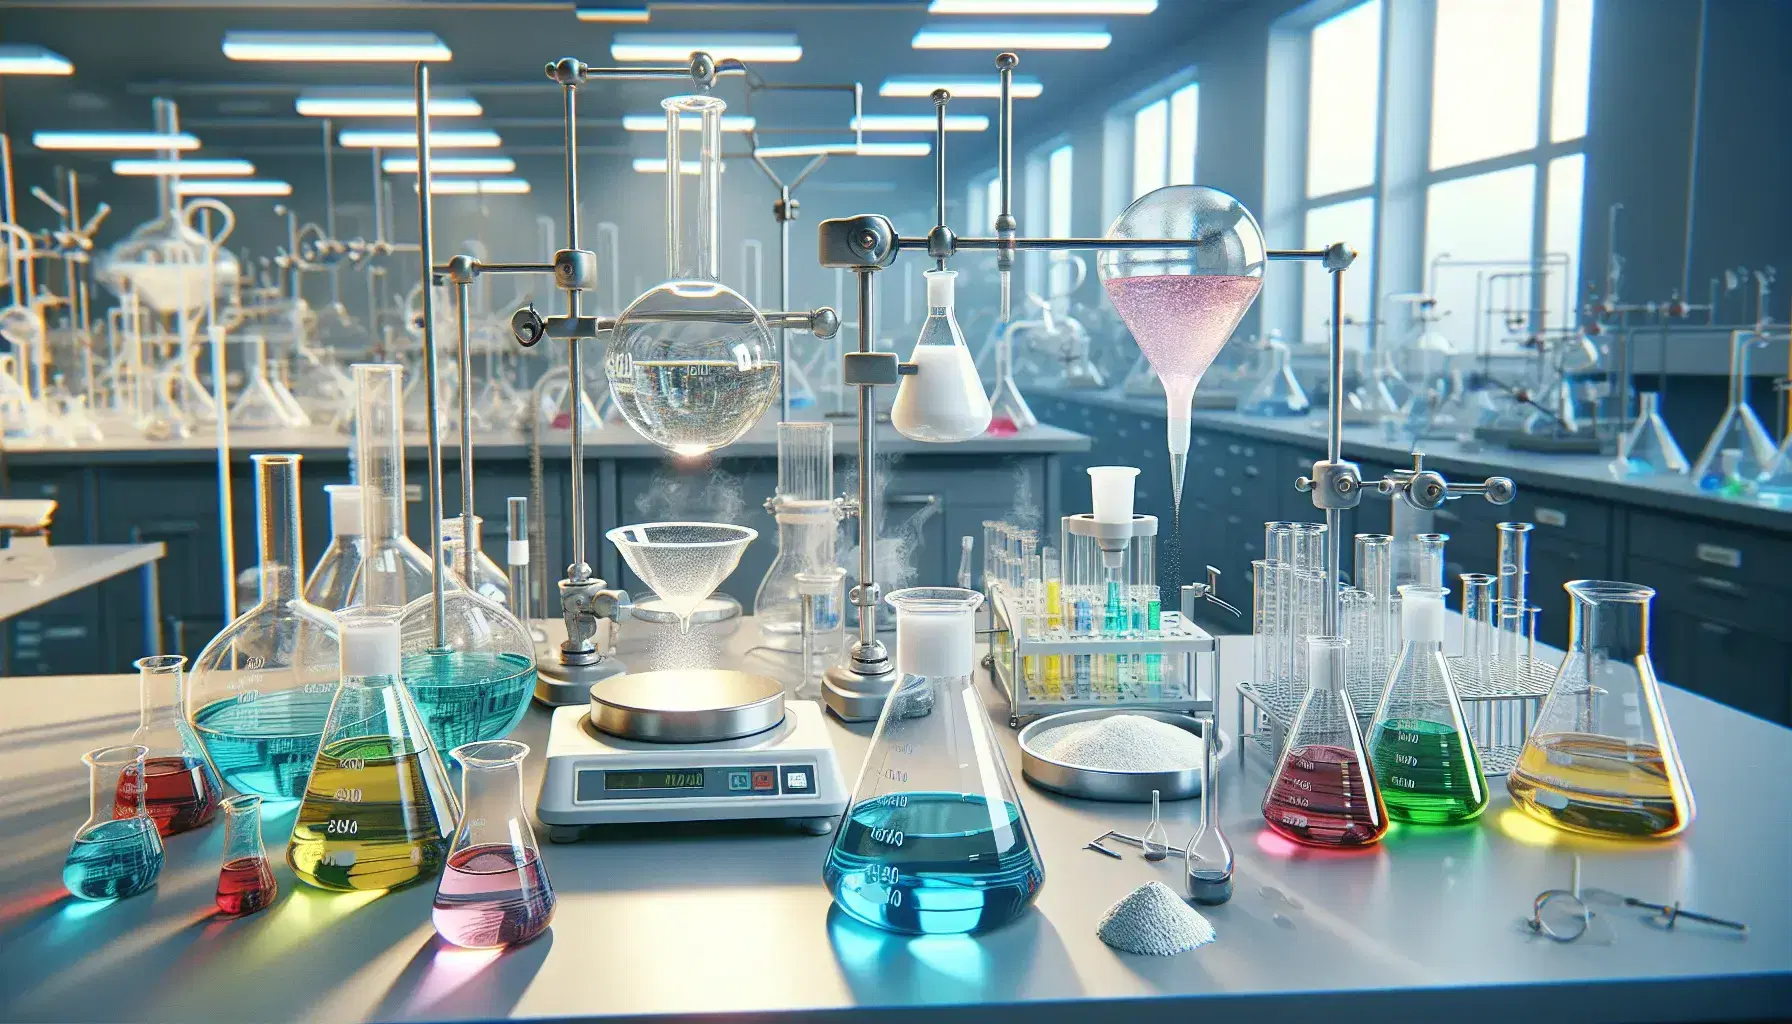 Laboratorio de química con mesa de trabajo y frascos Erlenmeyer con líquidos de colores, embudo de separación bícromo, balanza analítica y mechero Bunsen.